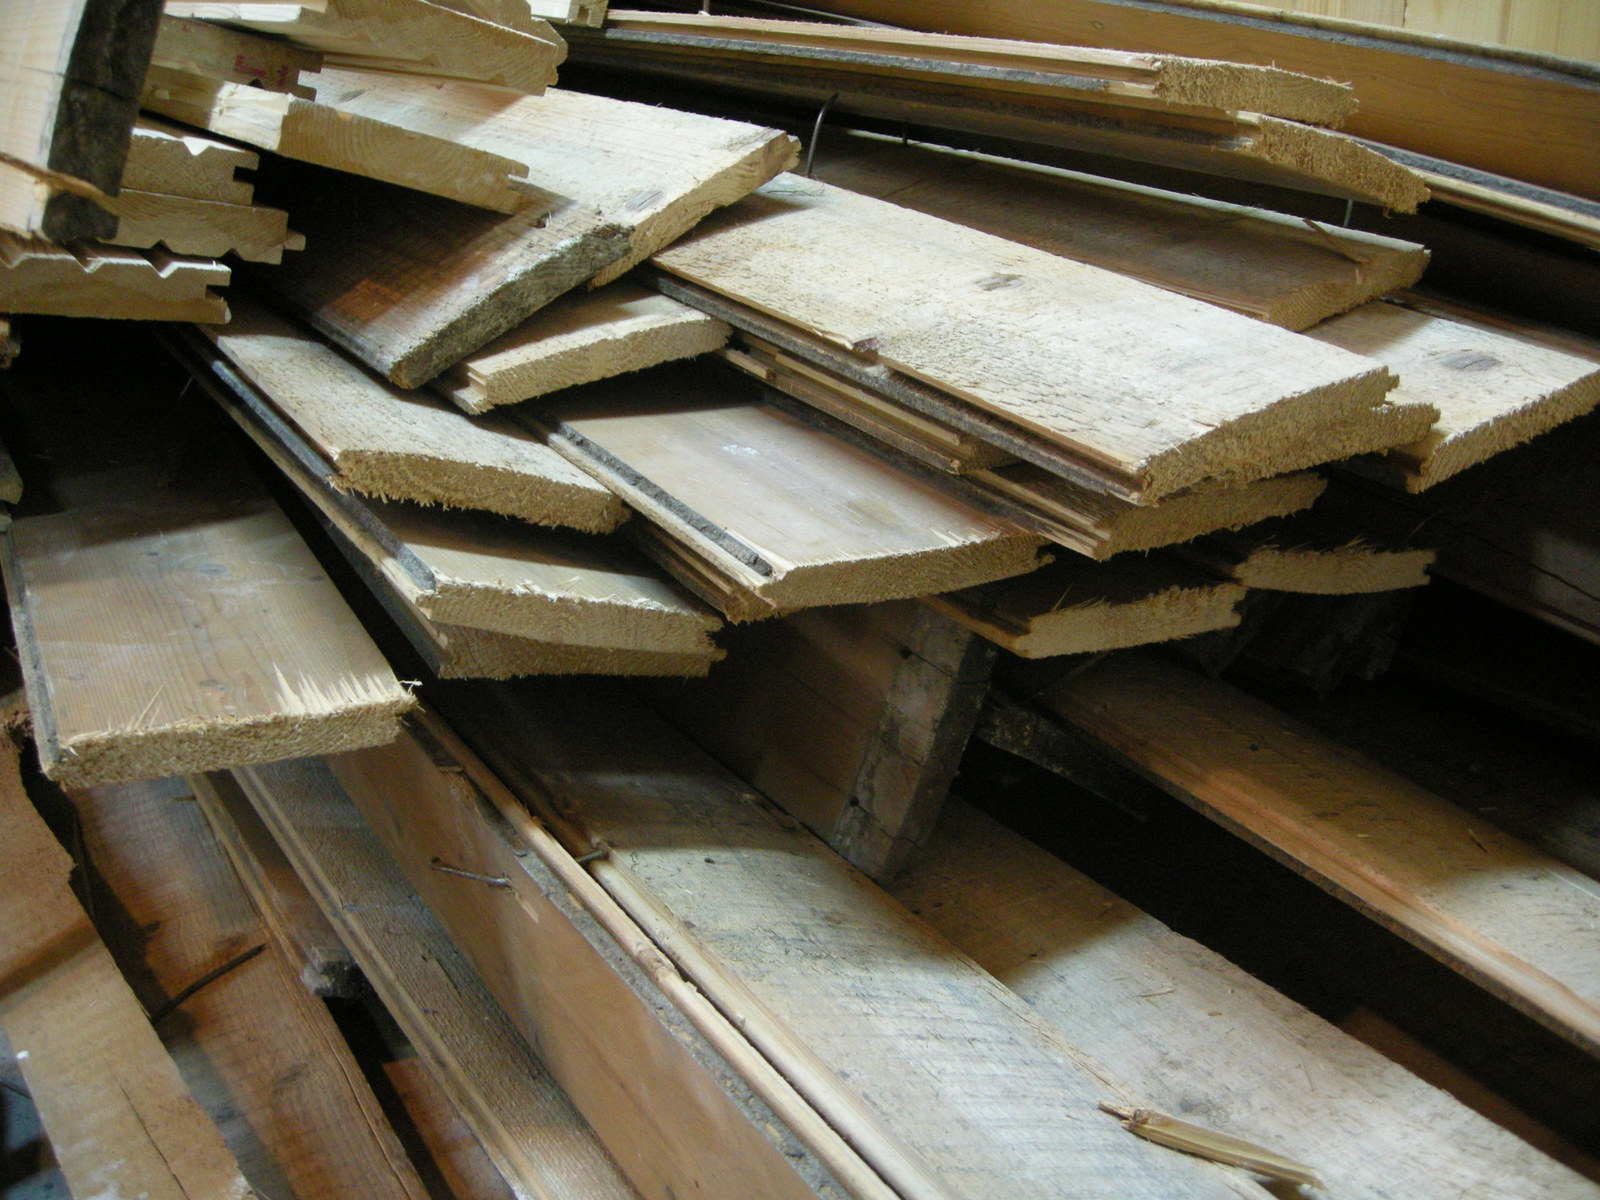 Holzstapel mit ausgebauten Dielenbrettern, Bild: Martin Kohlhaas